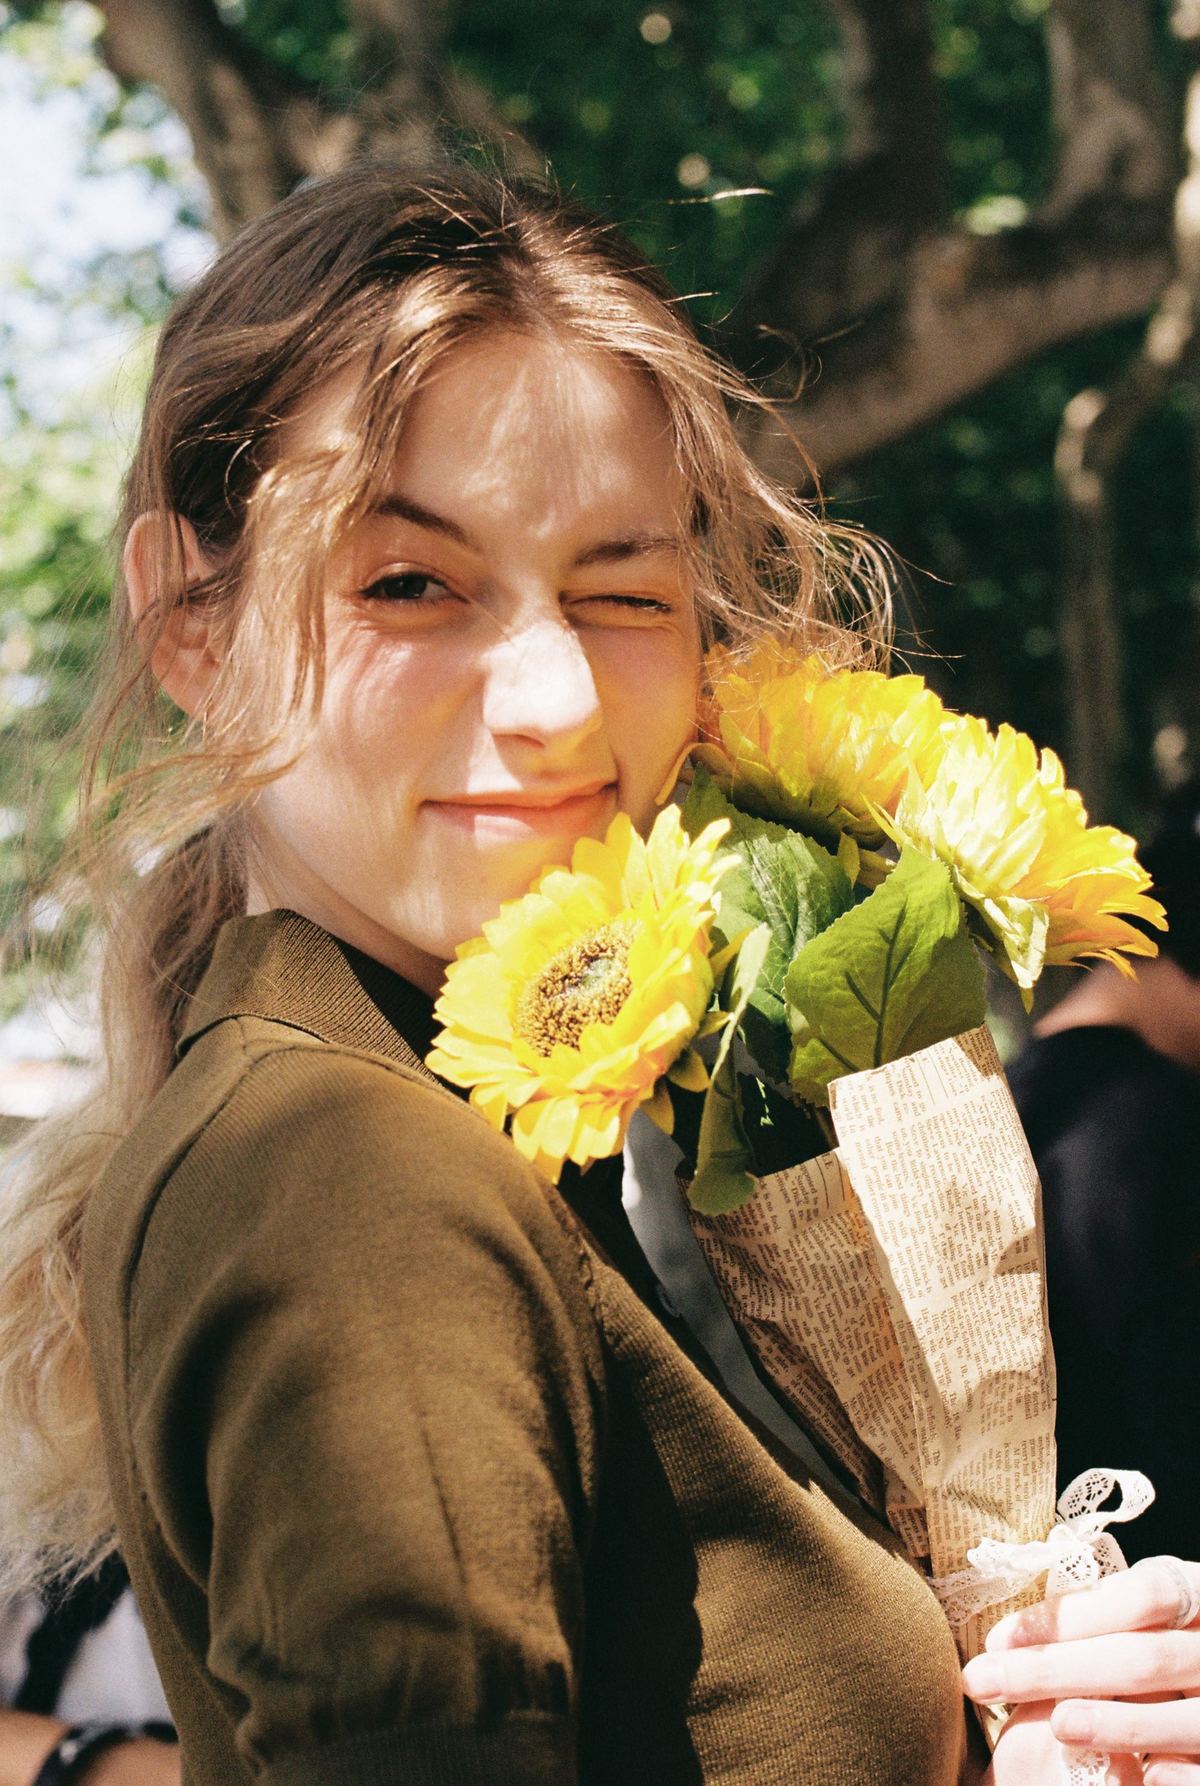 一位年轻女子举着向日葵花束对着她的脸